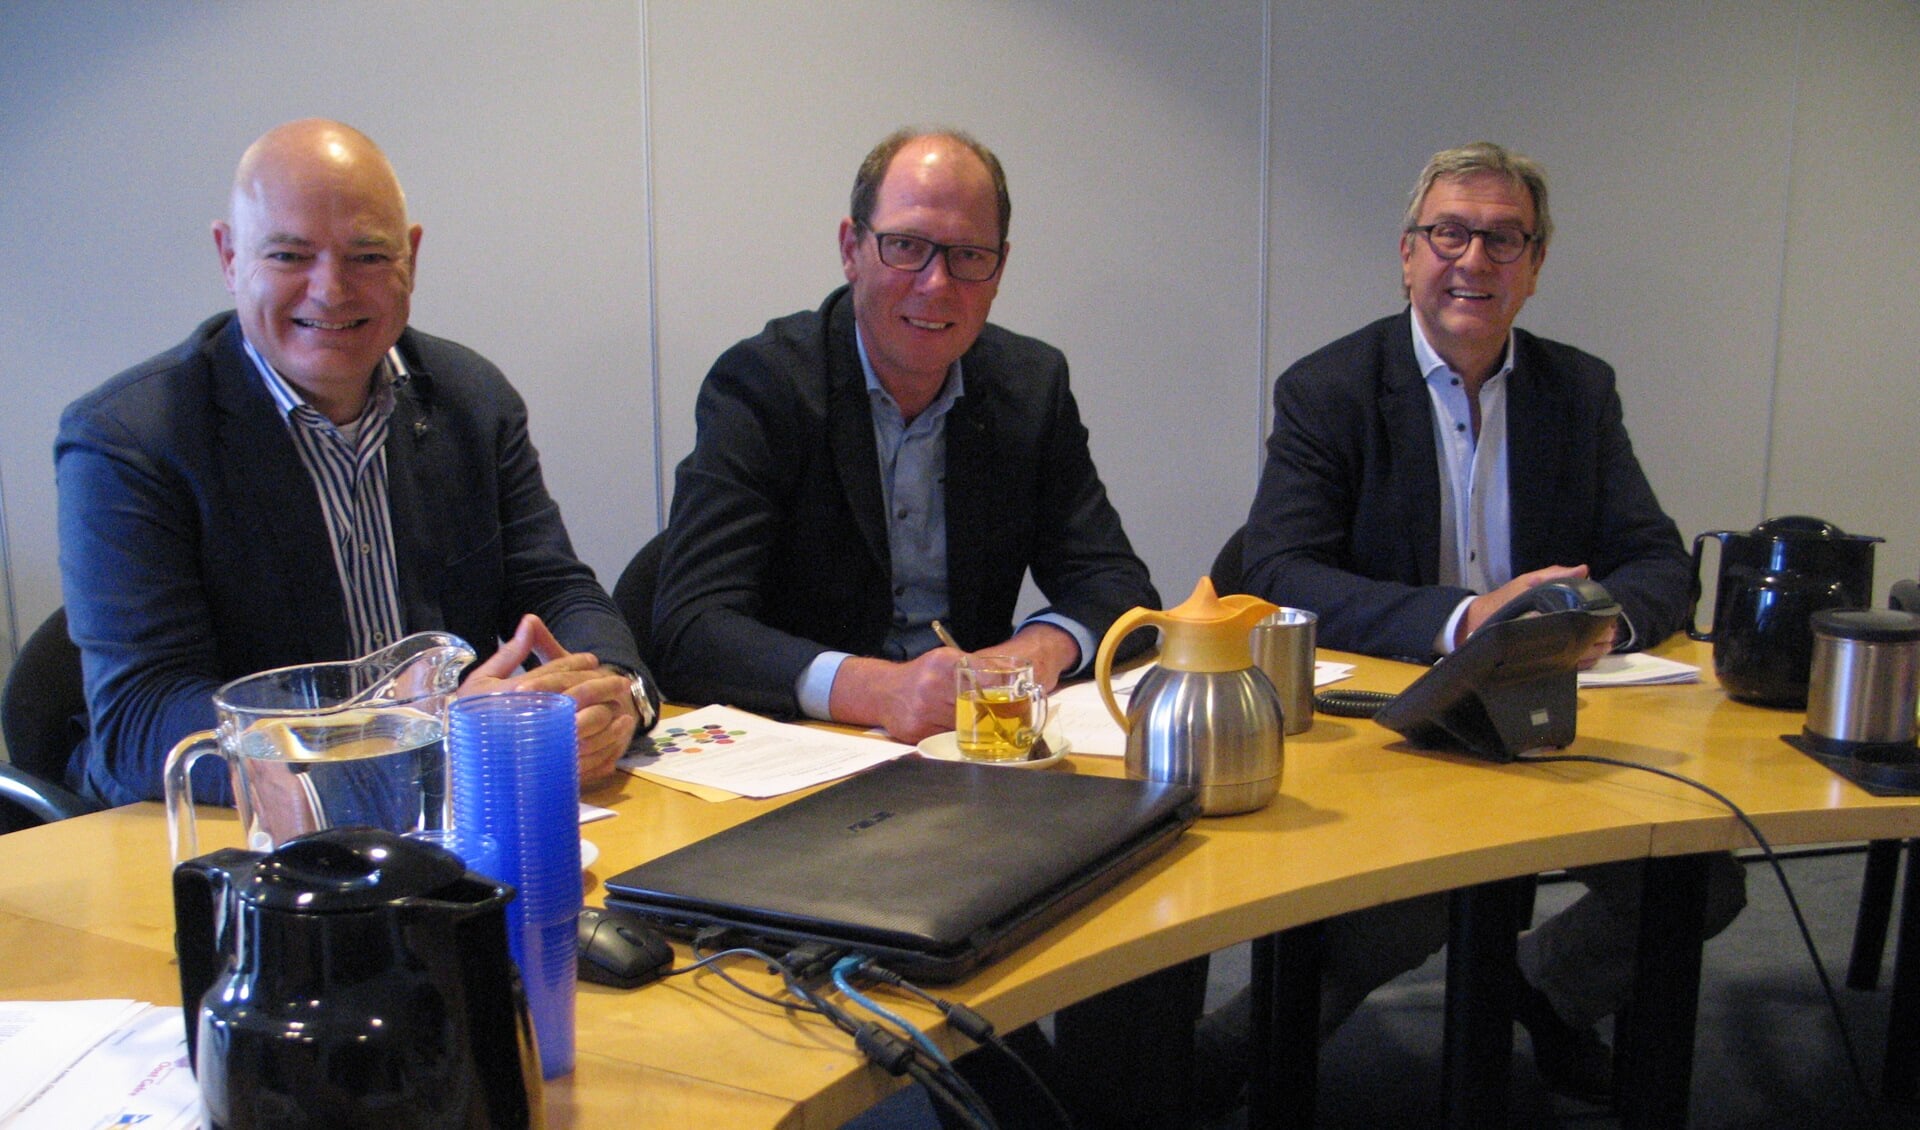 De wethouders Gommers, Kok en Van Uem lichten de gezamenlijke erfgoednota toe. Foto: Bernhard Harfsterkamp